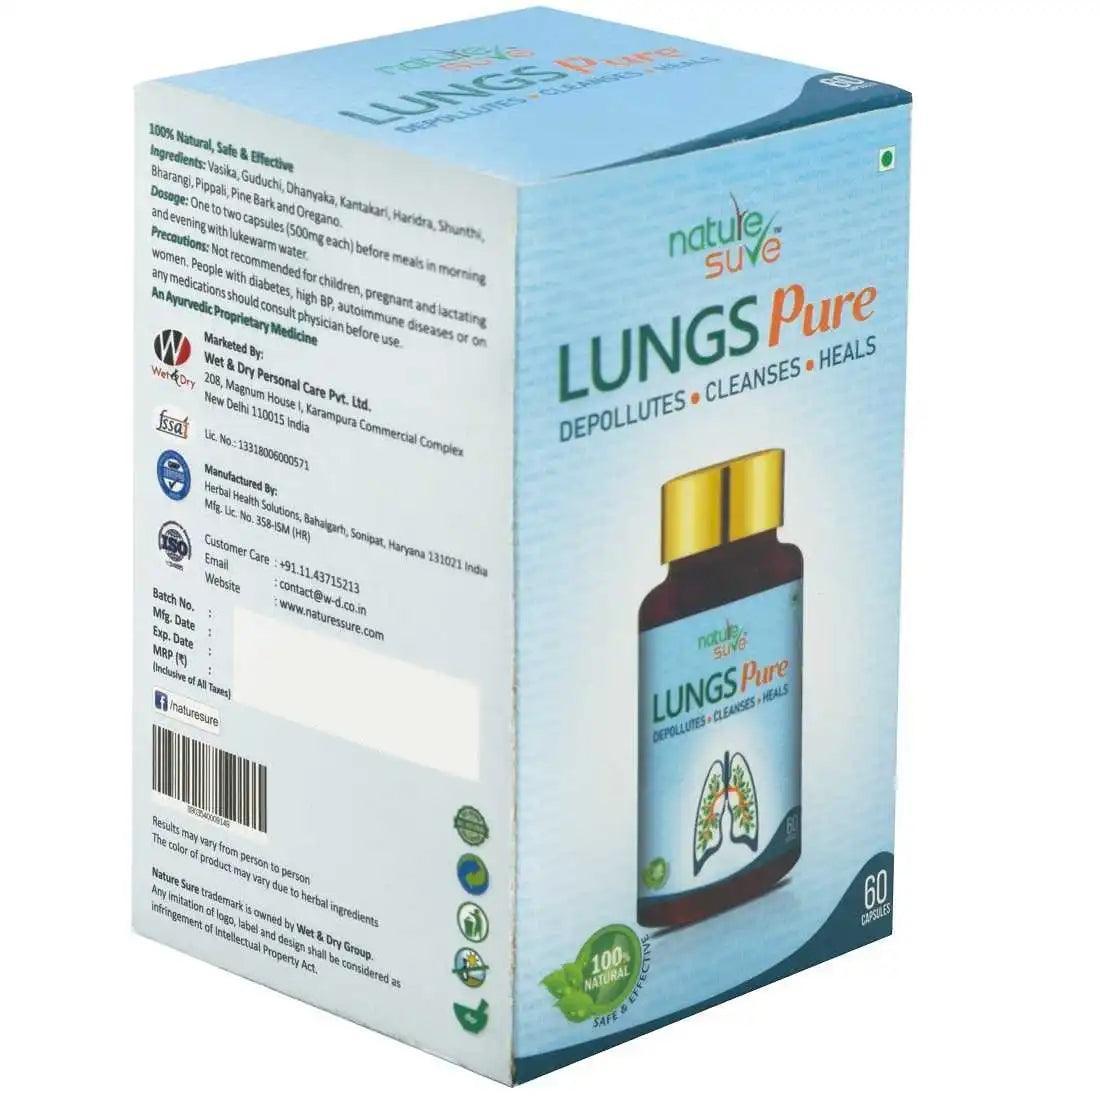 Nature Sure Lungs Pure - Regulatory Information - everteen-neud.com